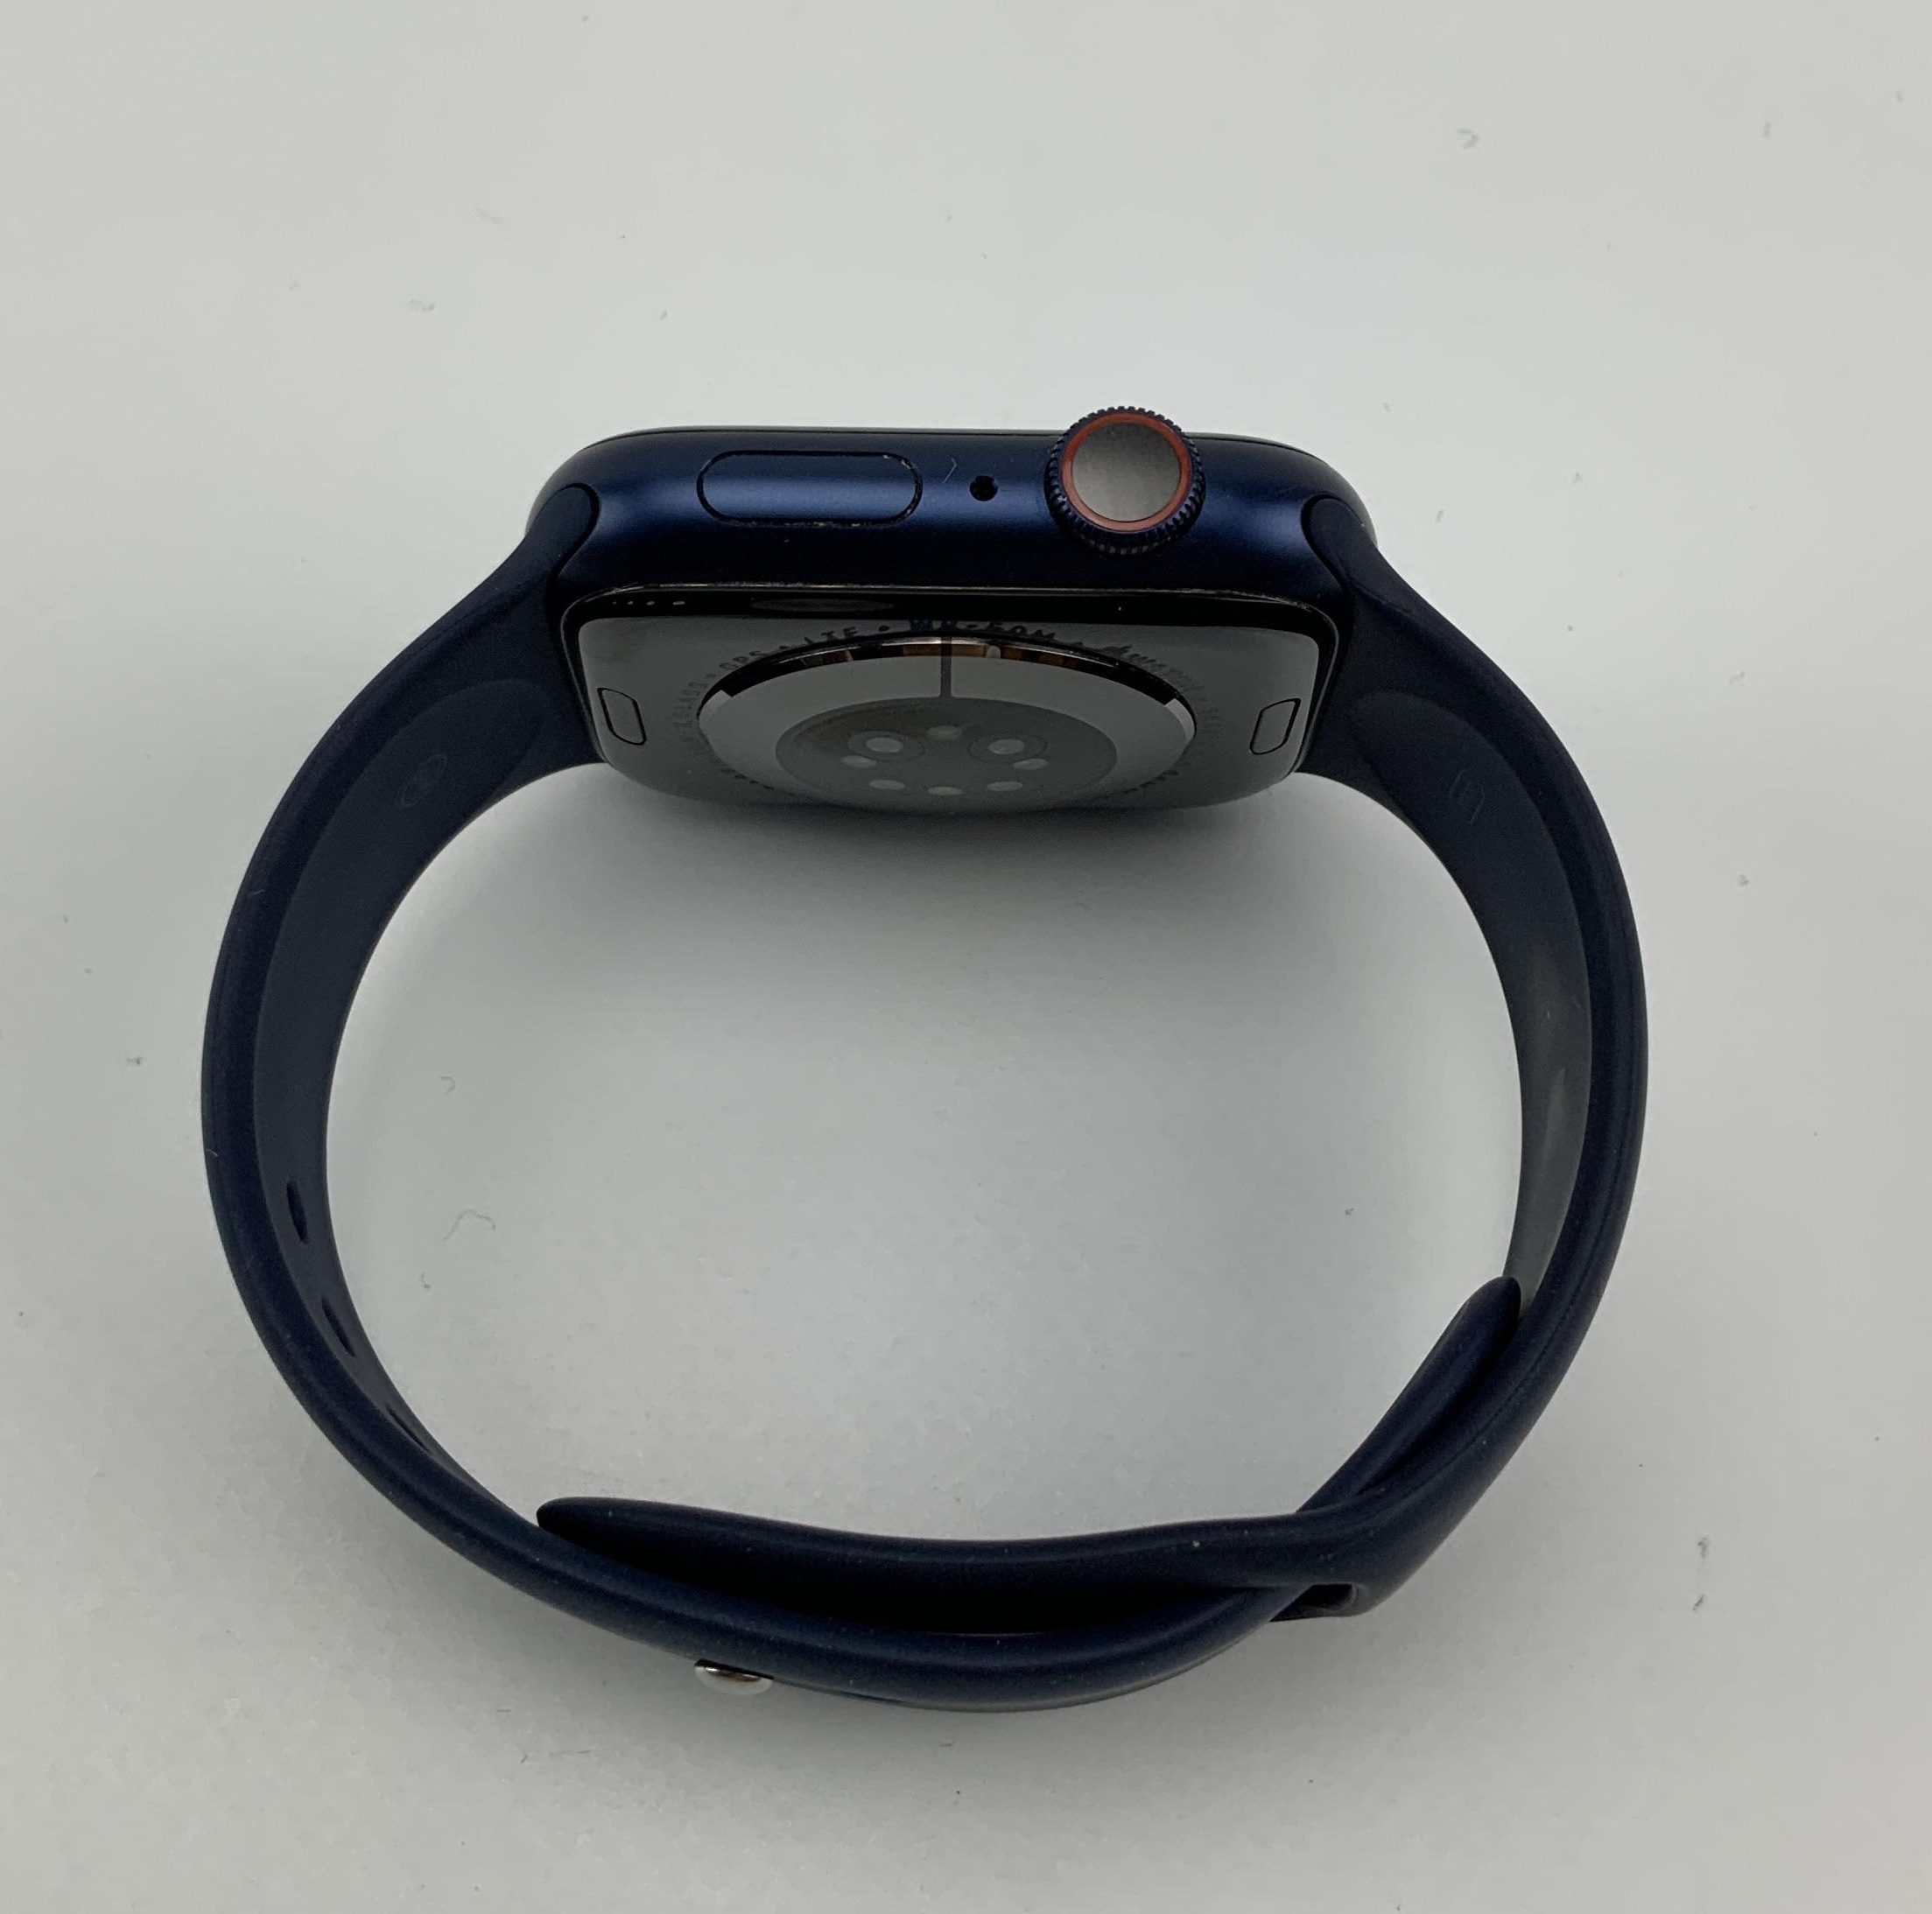 Watch Series 6 Aluminum Cellular (44mm), Blue, Bild 2